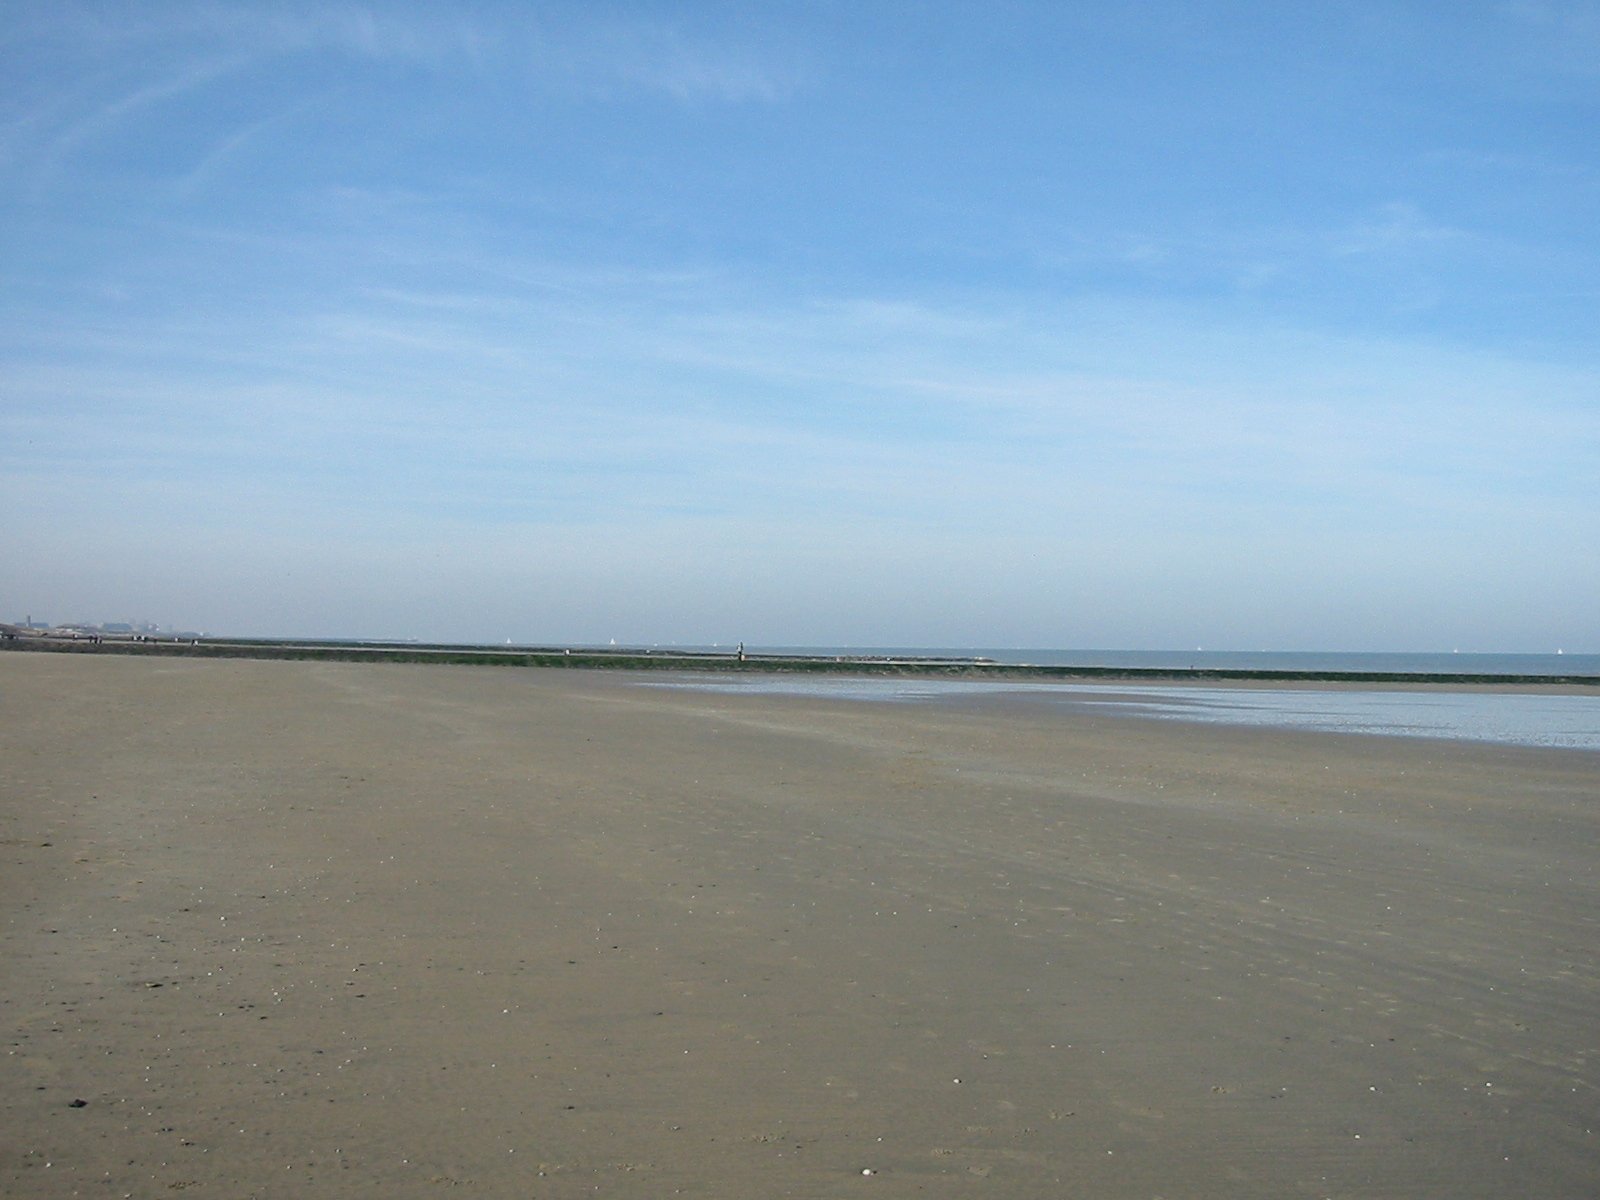 a person standing on a beach near the ocean